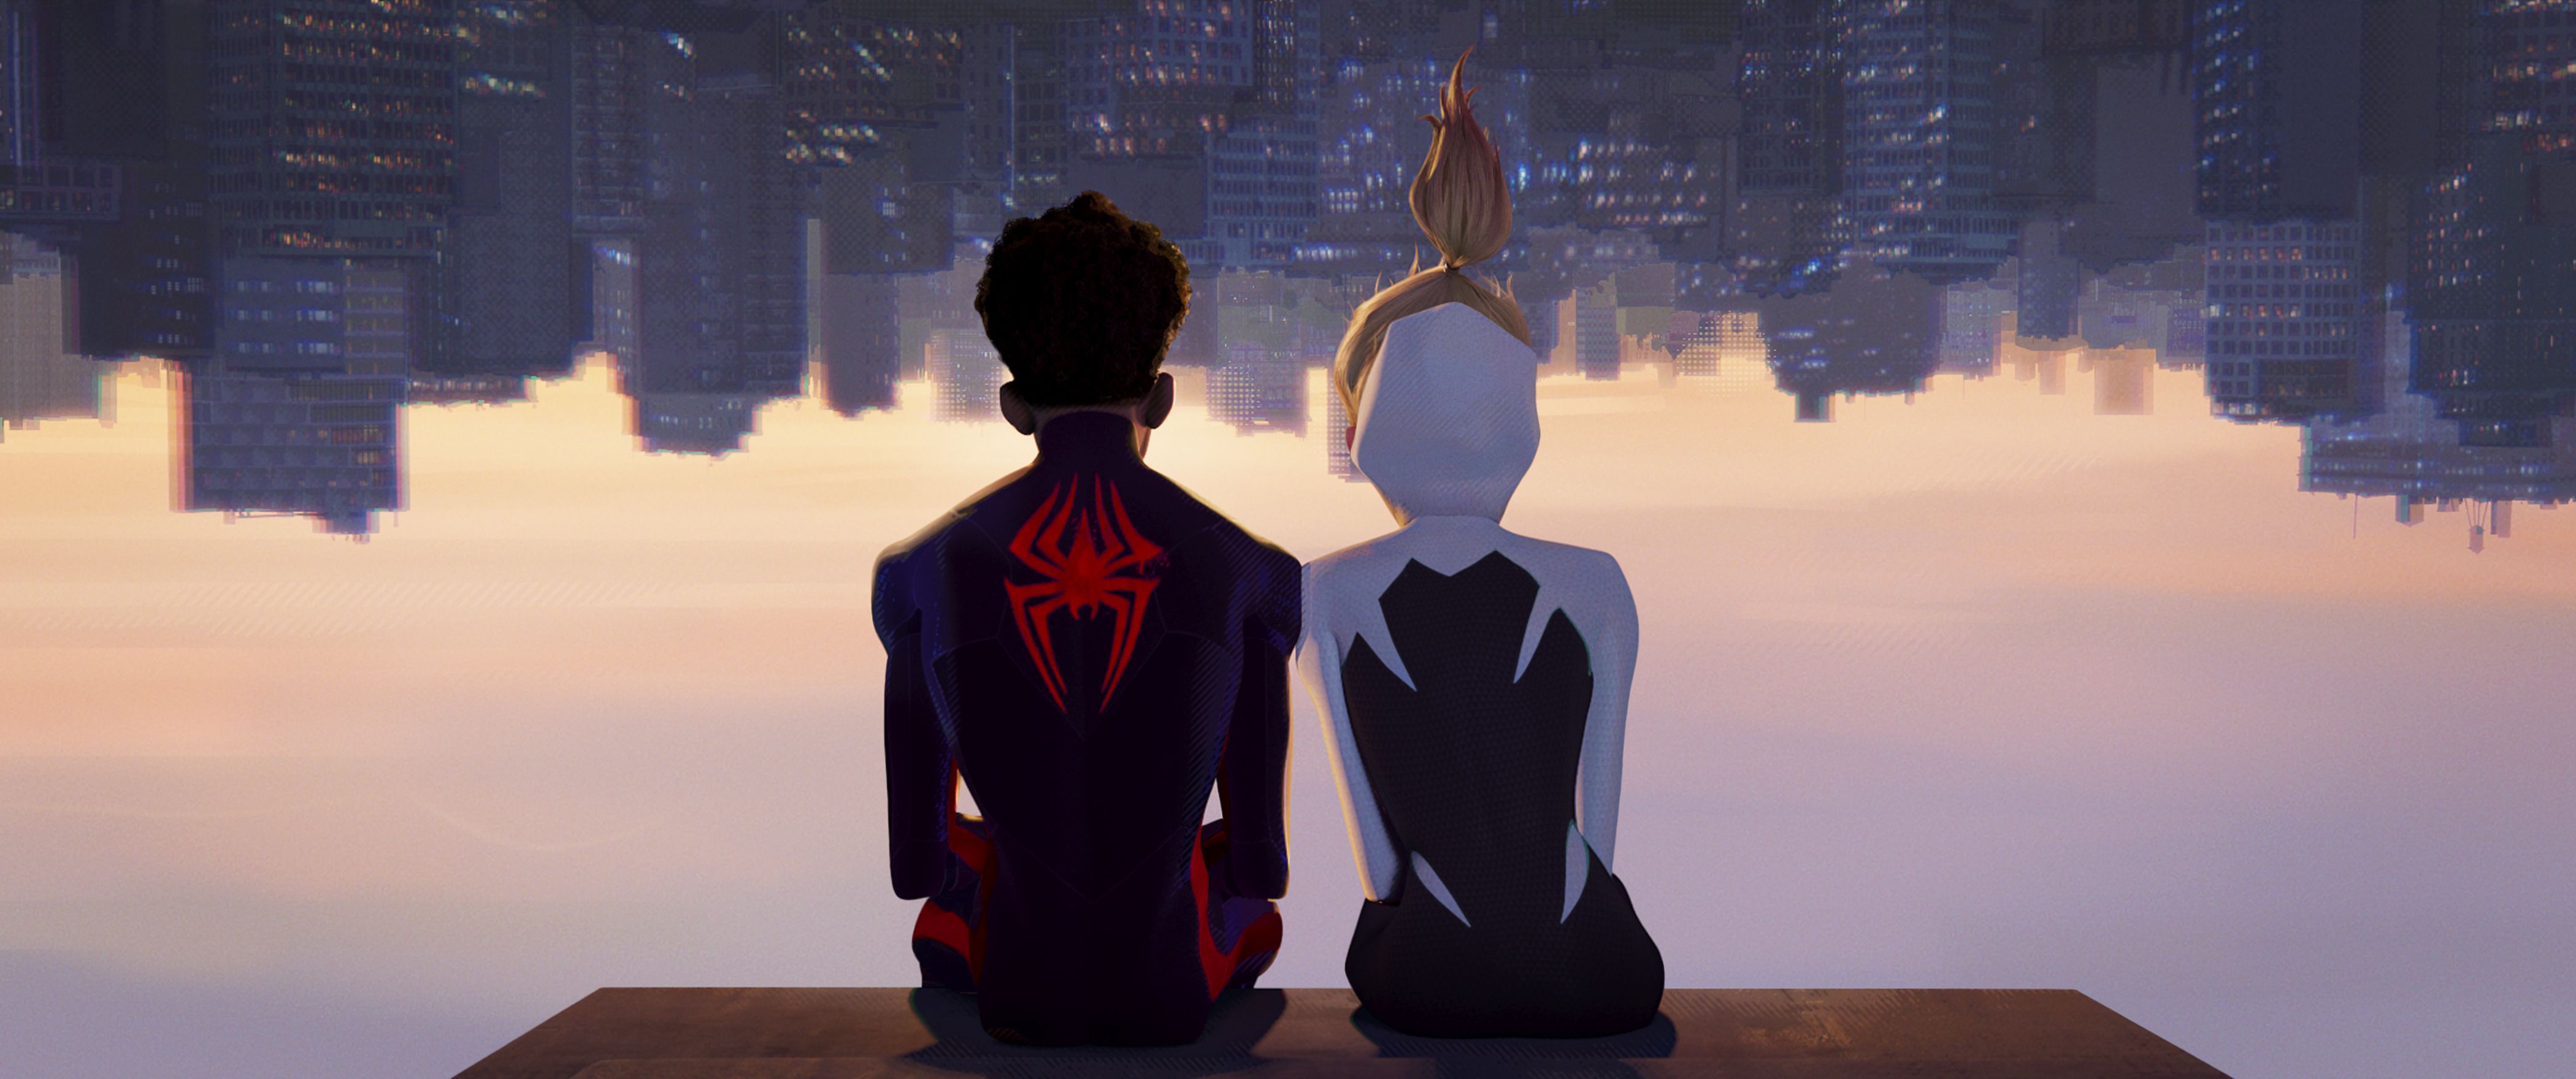 Miles Morales como Spider-Man, con la voz de Shameik Moore, y Spider-Gwen, con la voz de Hailee Steinfeld, en una escena de la película "Spider-Man: Across the Spider-Verse". (Sony Pictures Animation)